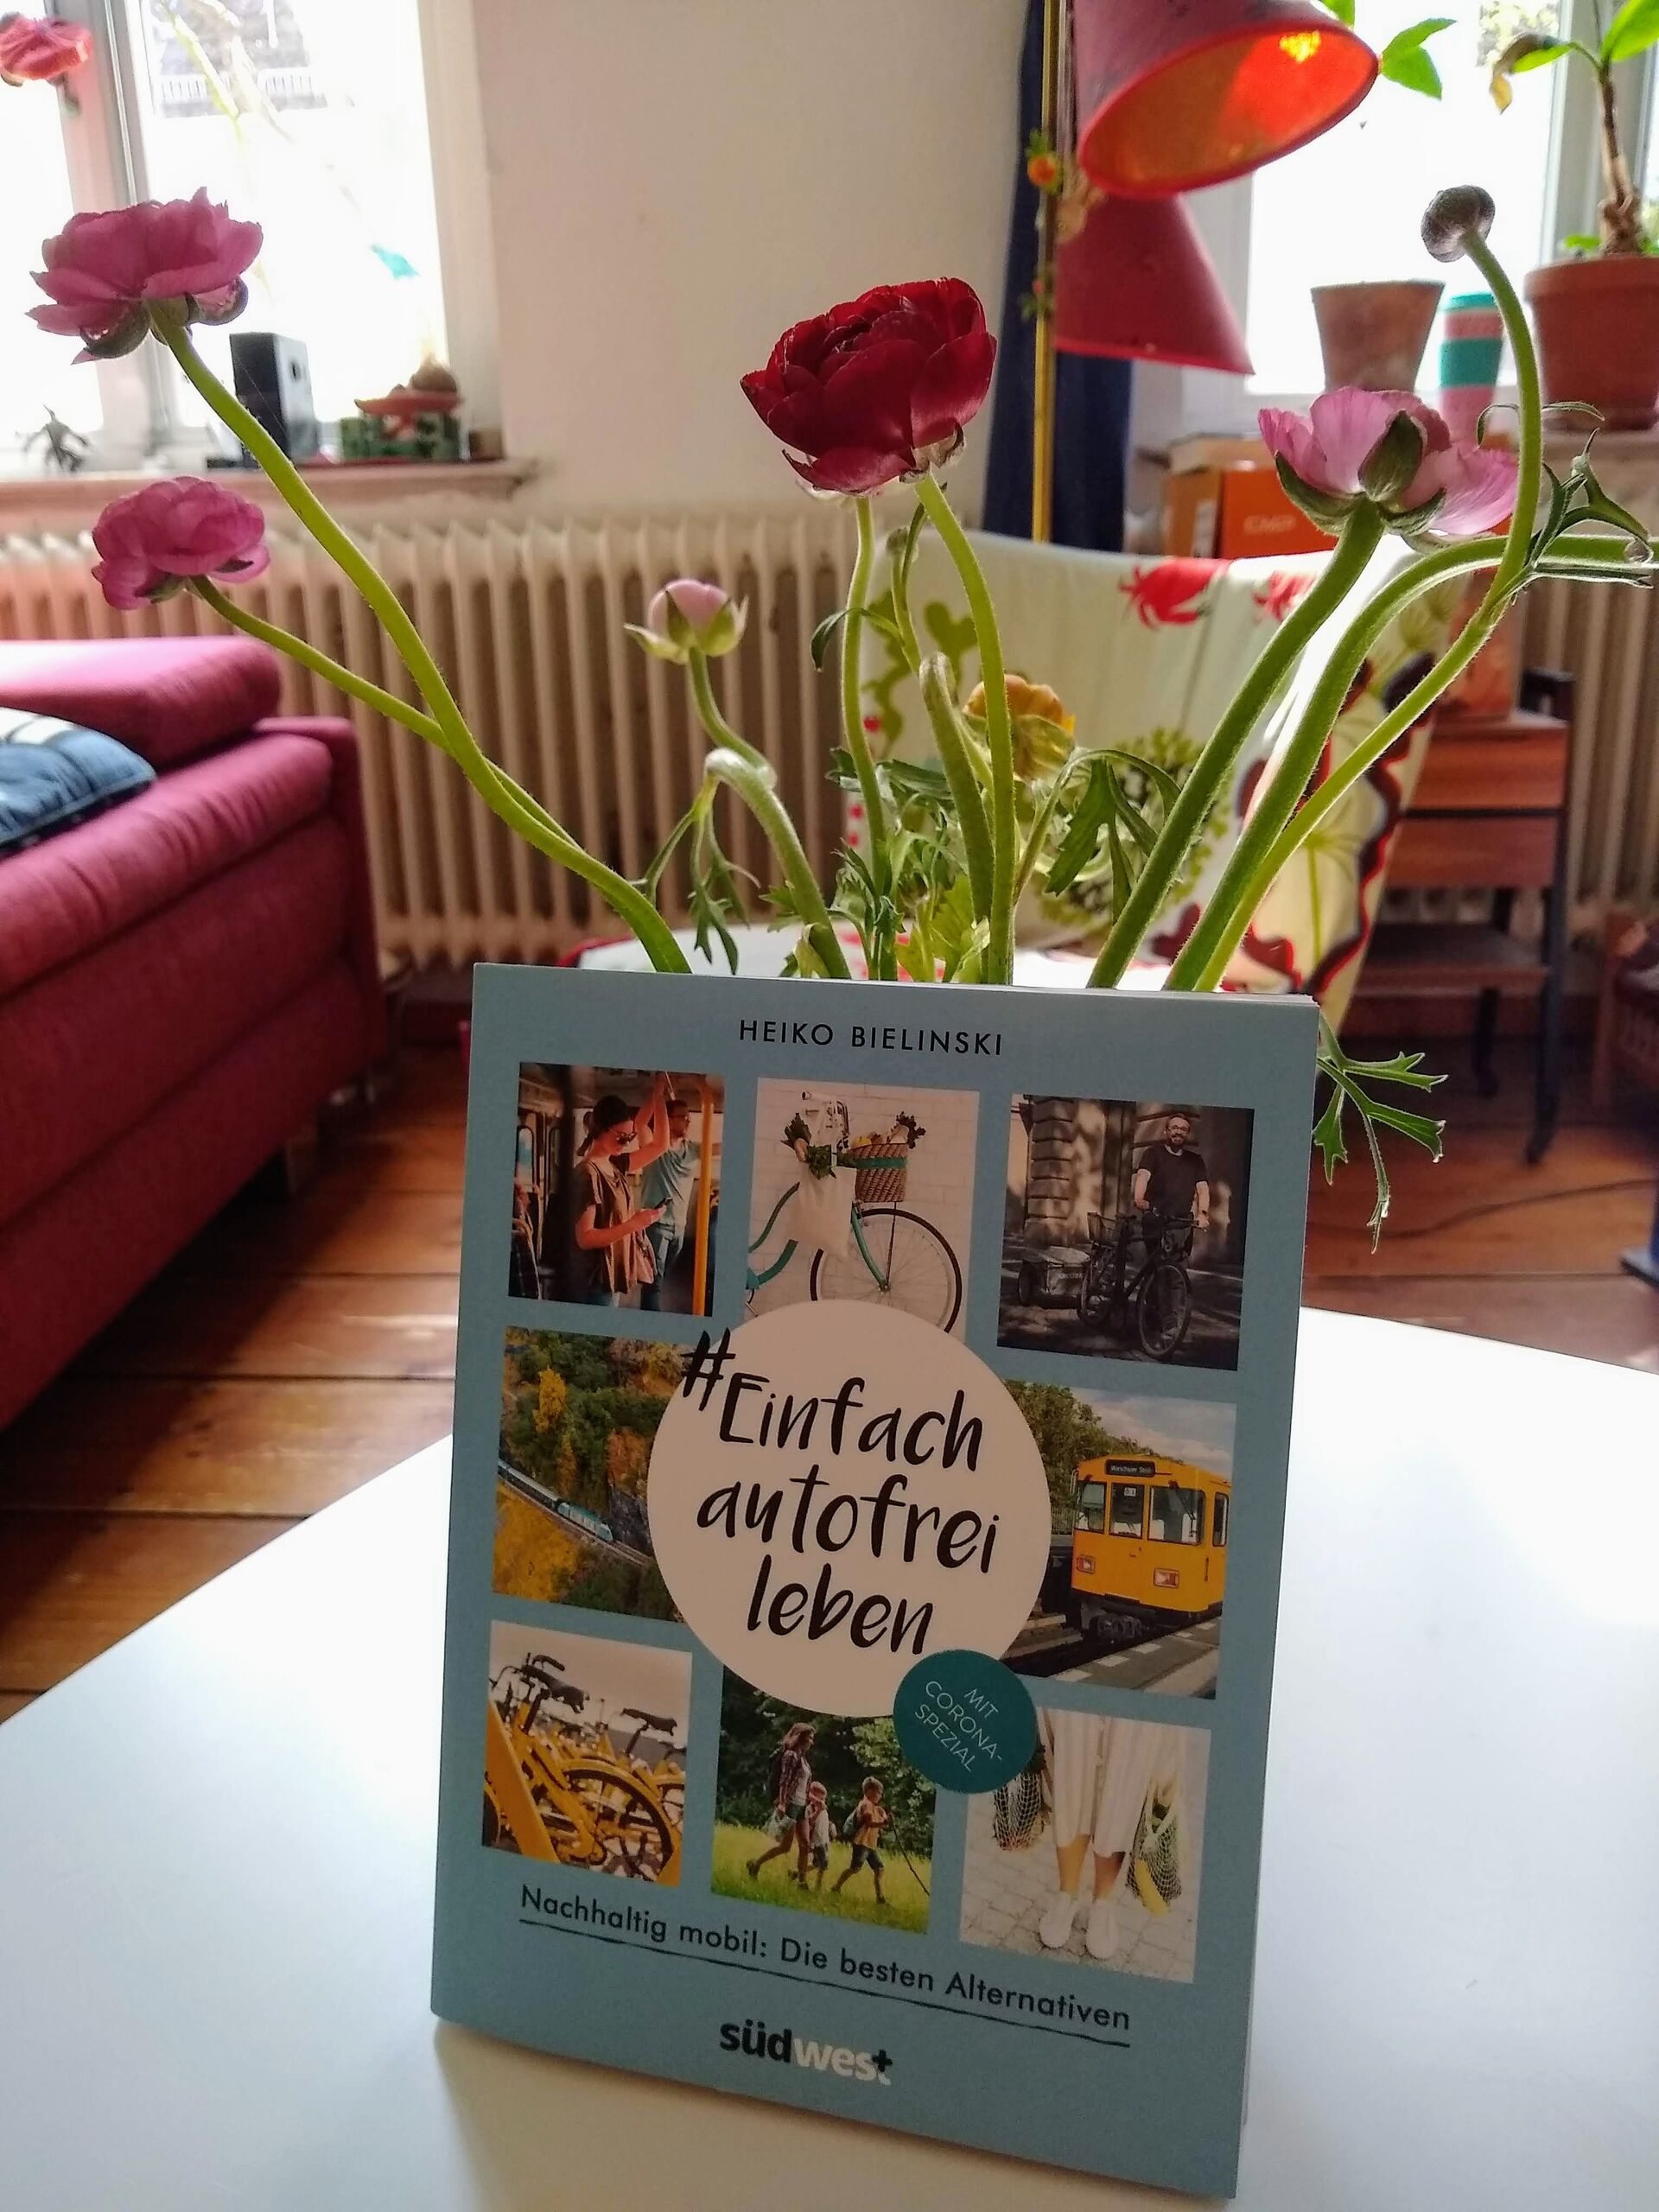 Das Buch von Heiko Bielinski an einer Vase mit Blumen gelehnt auf einem Tisch im Wohnzimmer.